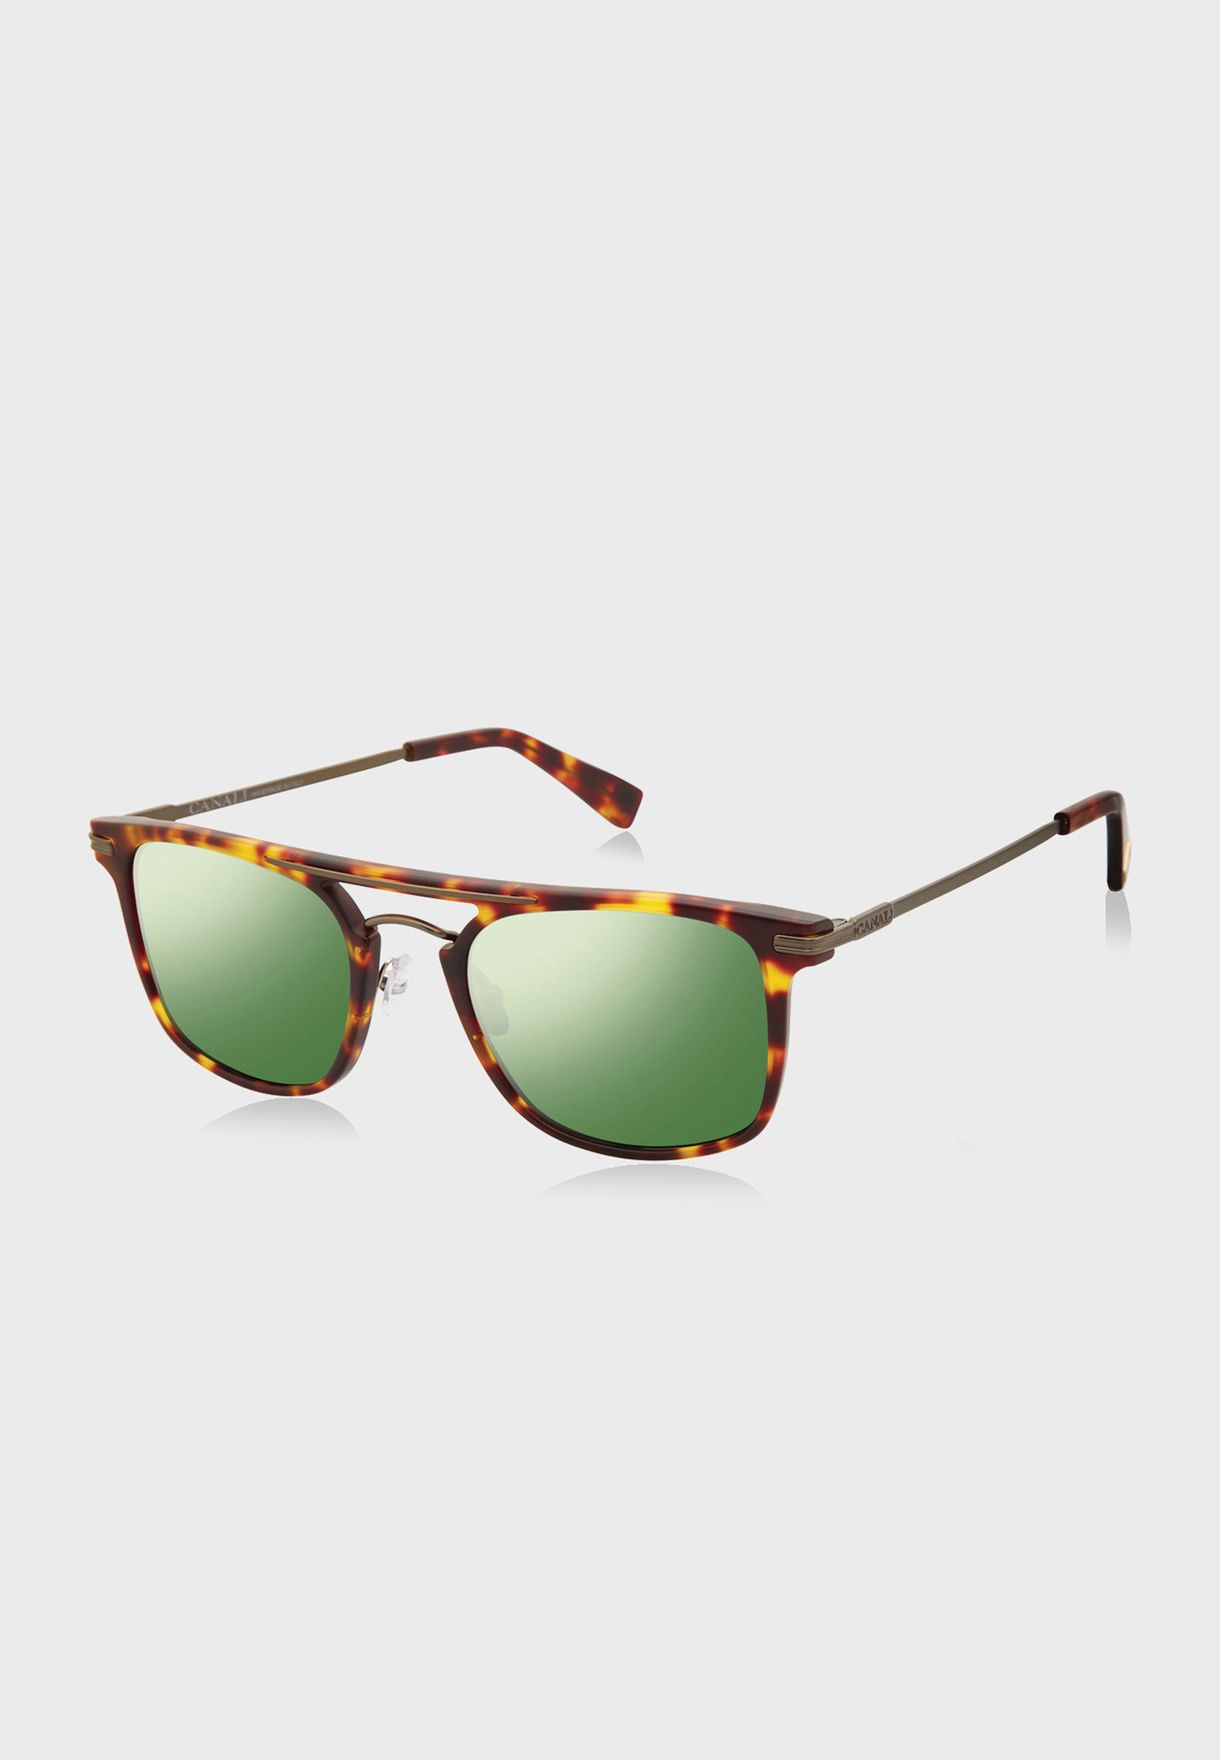 L CO21101 Clubmaster Sunglasses